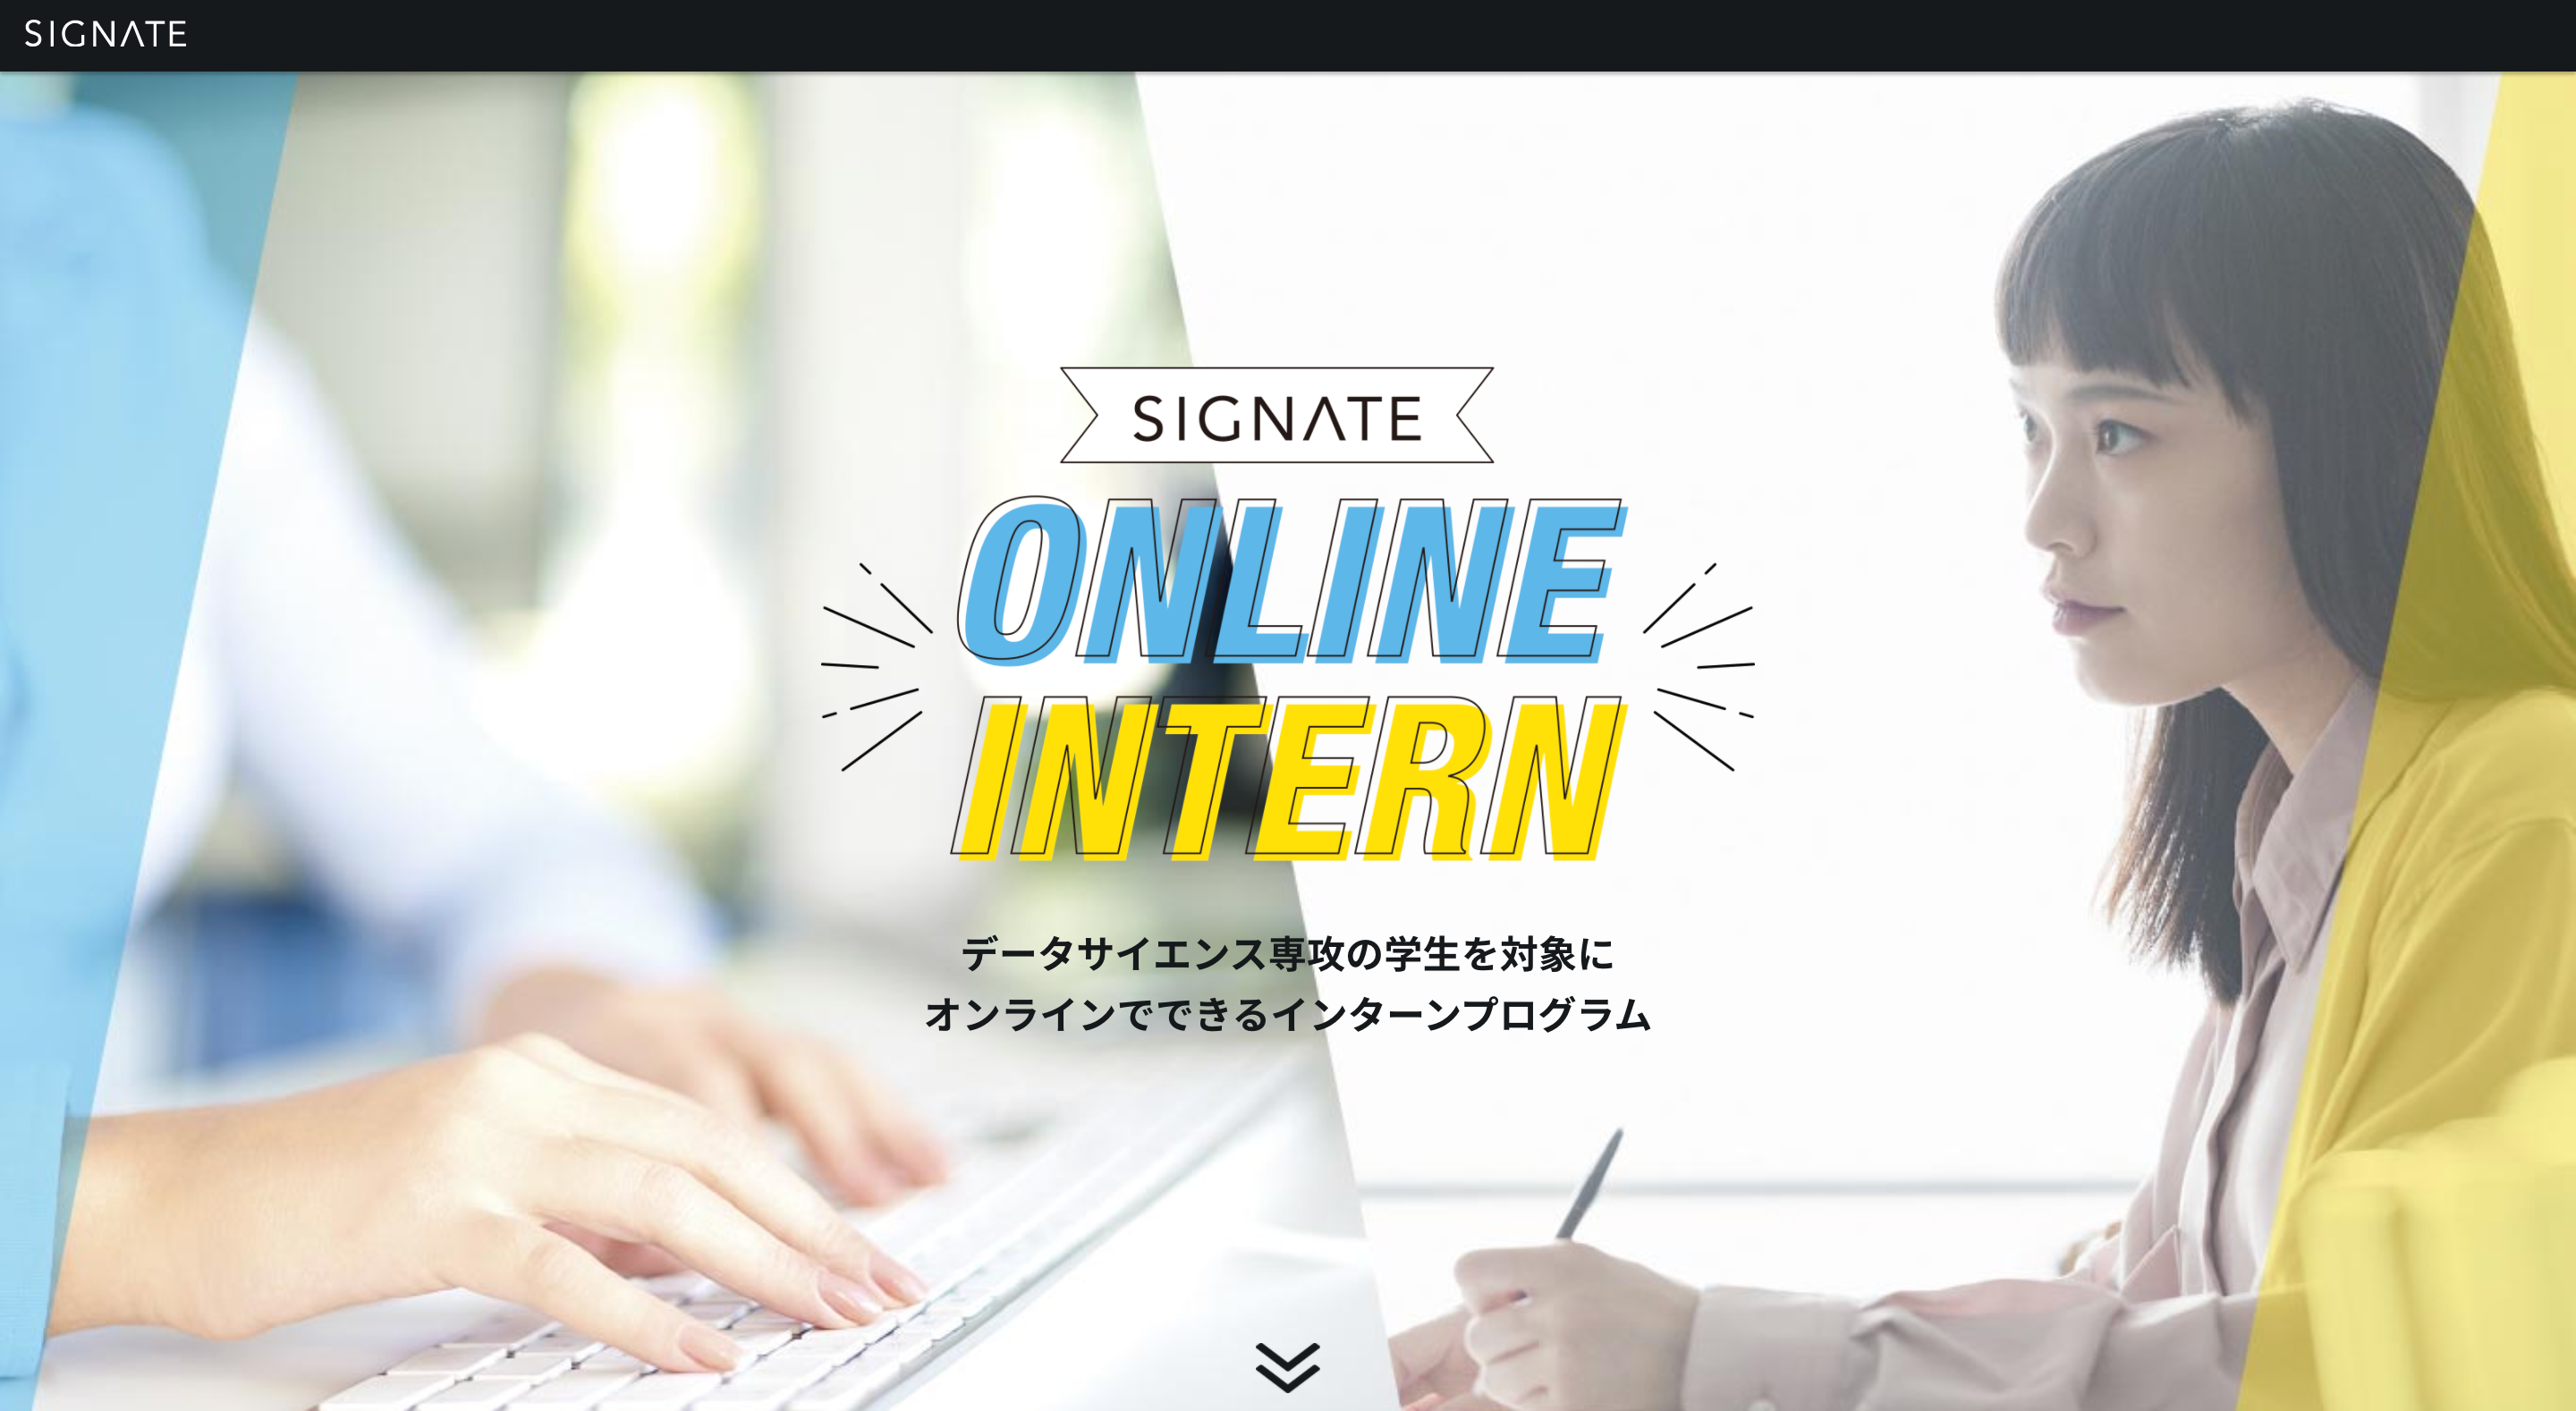 Signate データサイエンス専攻学生を対象にオンラインで開催可能なインターンプログラム Signate Online Intern を提供開始 株式会社signateのプレスリリース